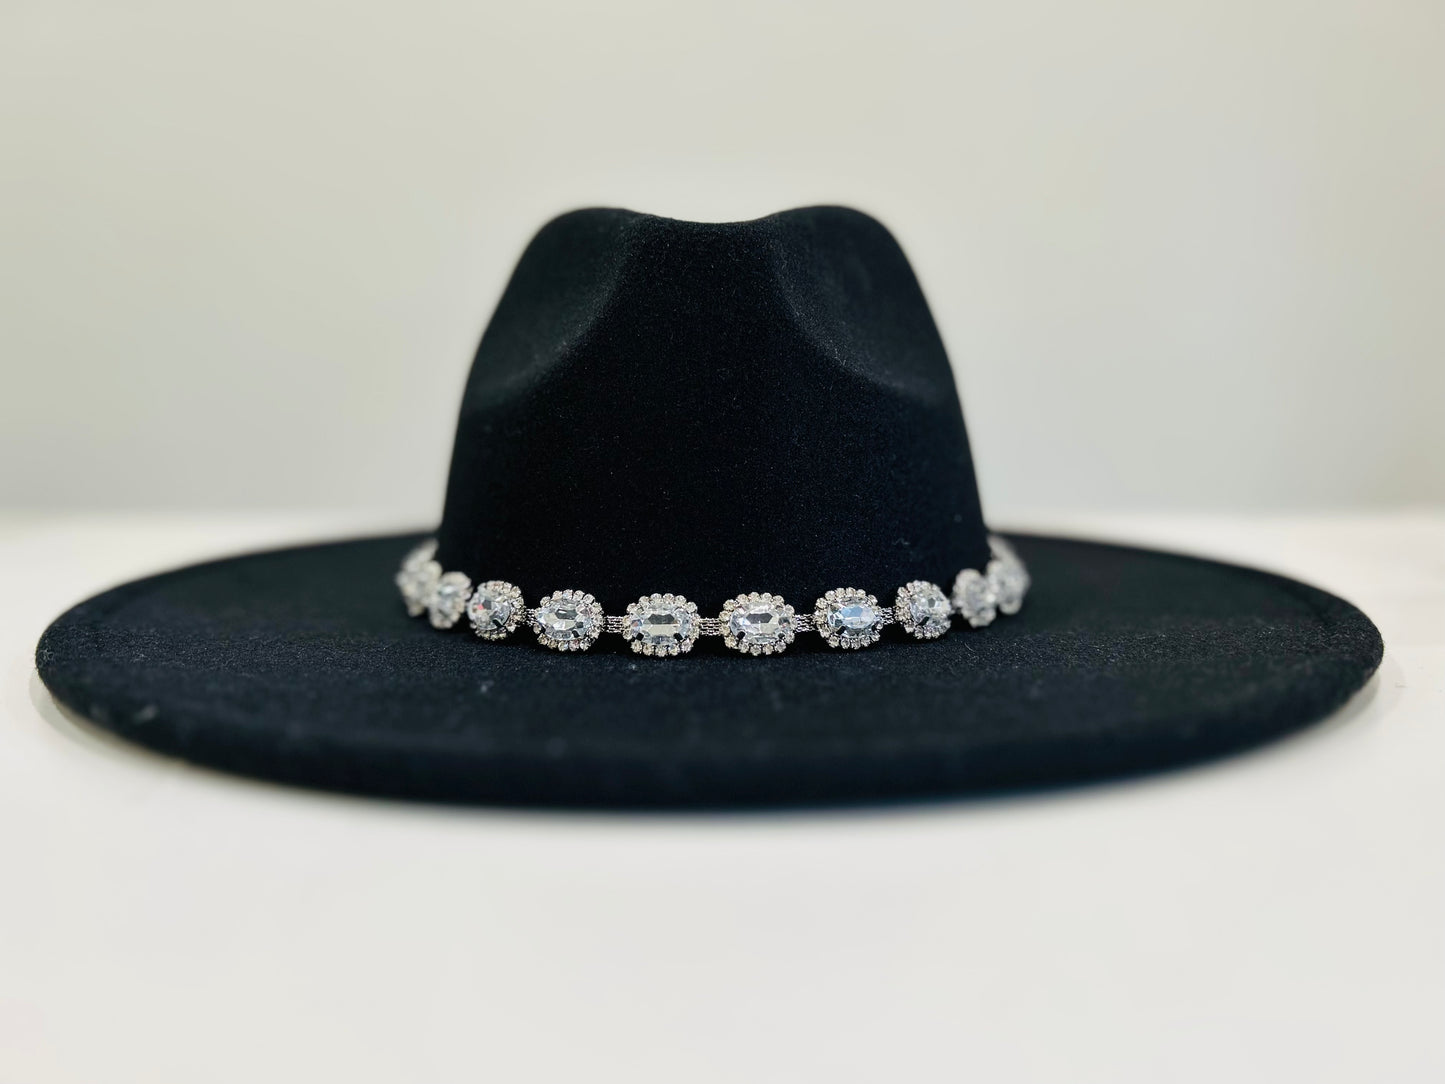 Rhinestone Cowgirl Felt Hat